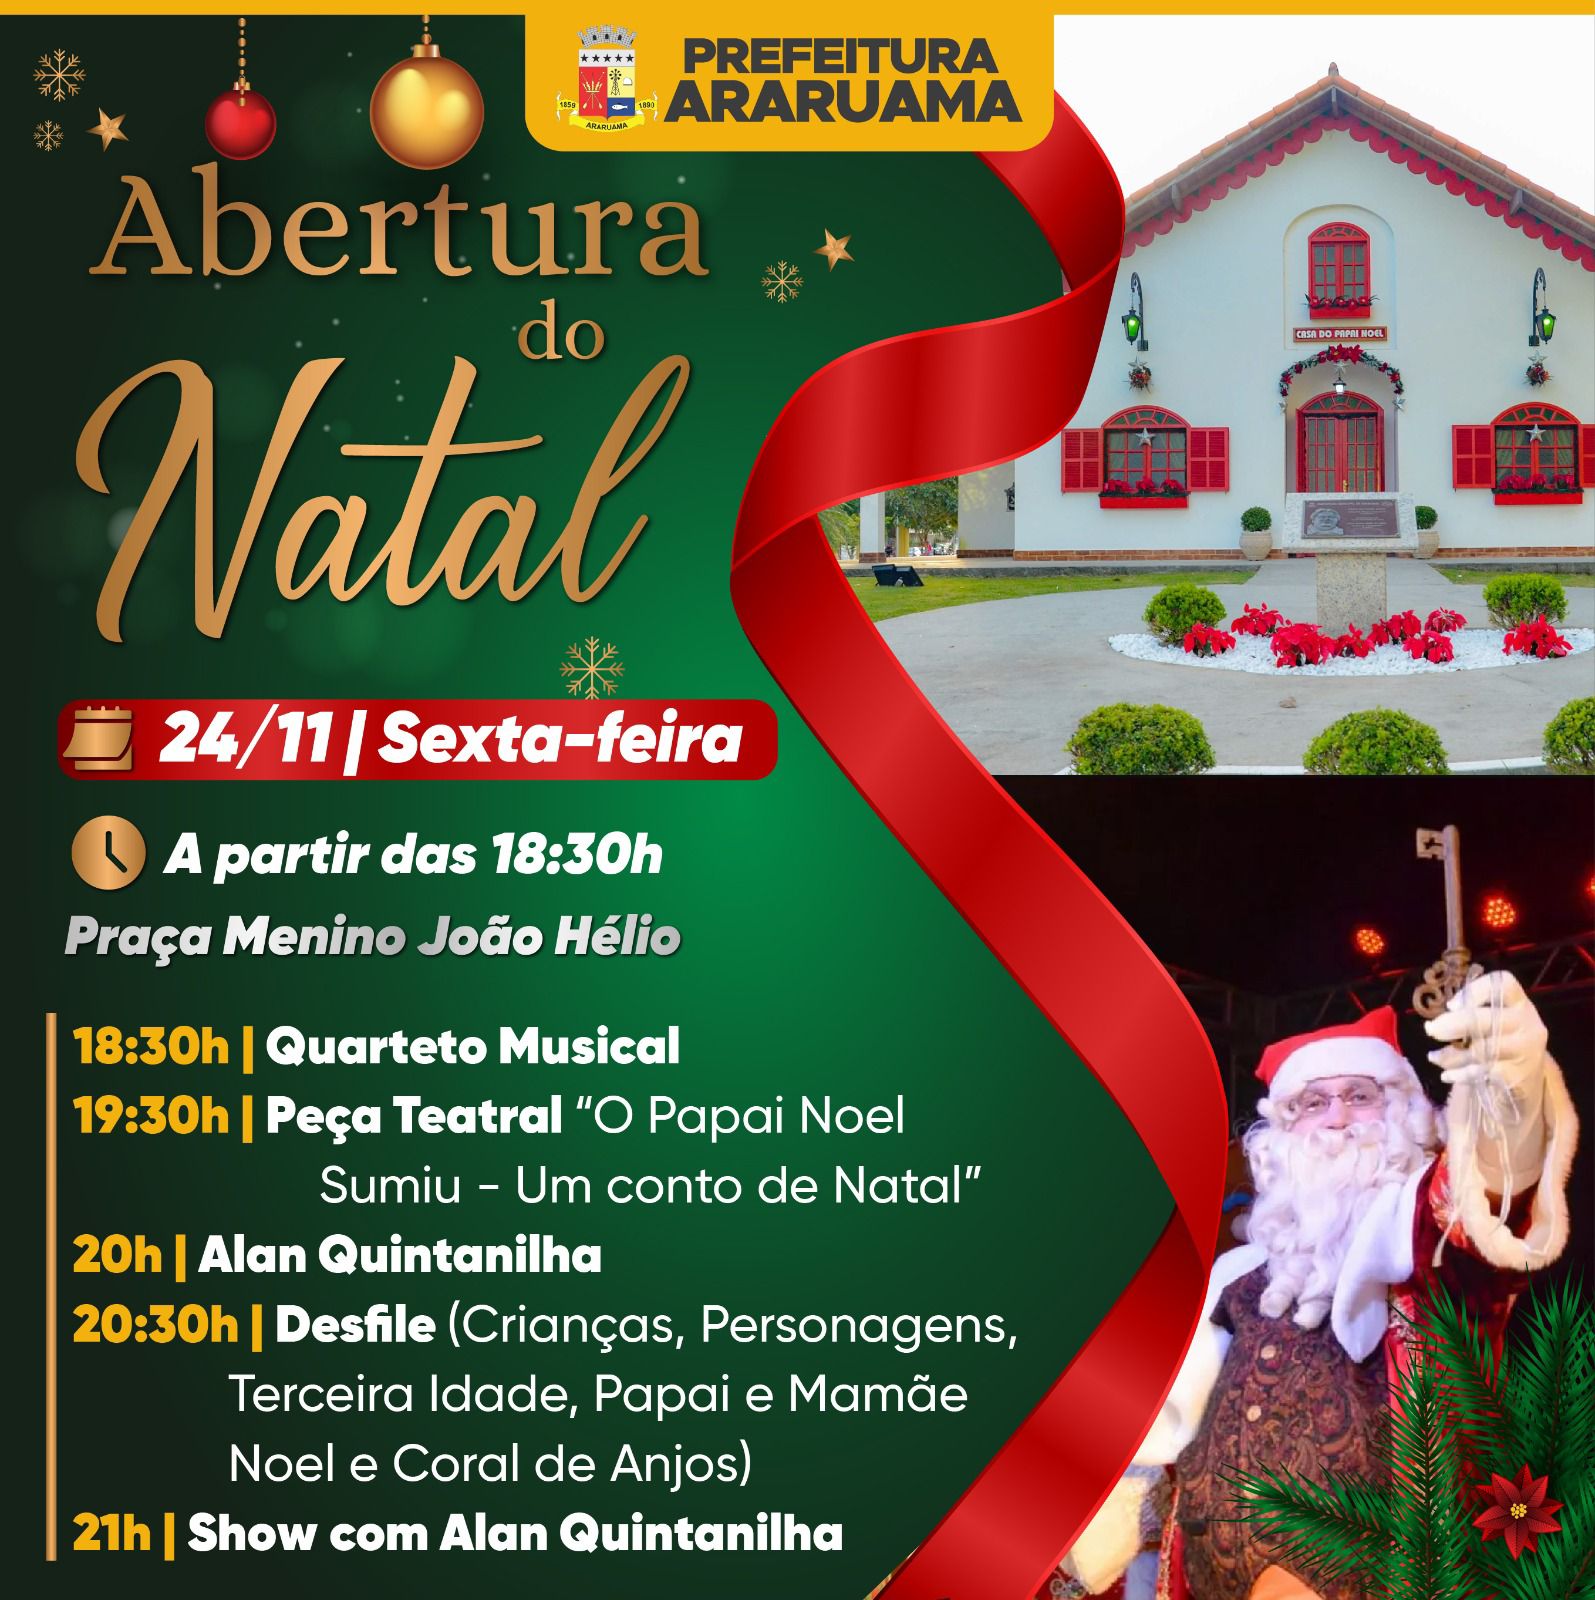 Abertura do Natal em Araruama promete encantar crianças e adultos nessa sexta-feira